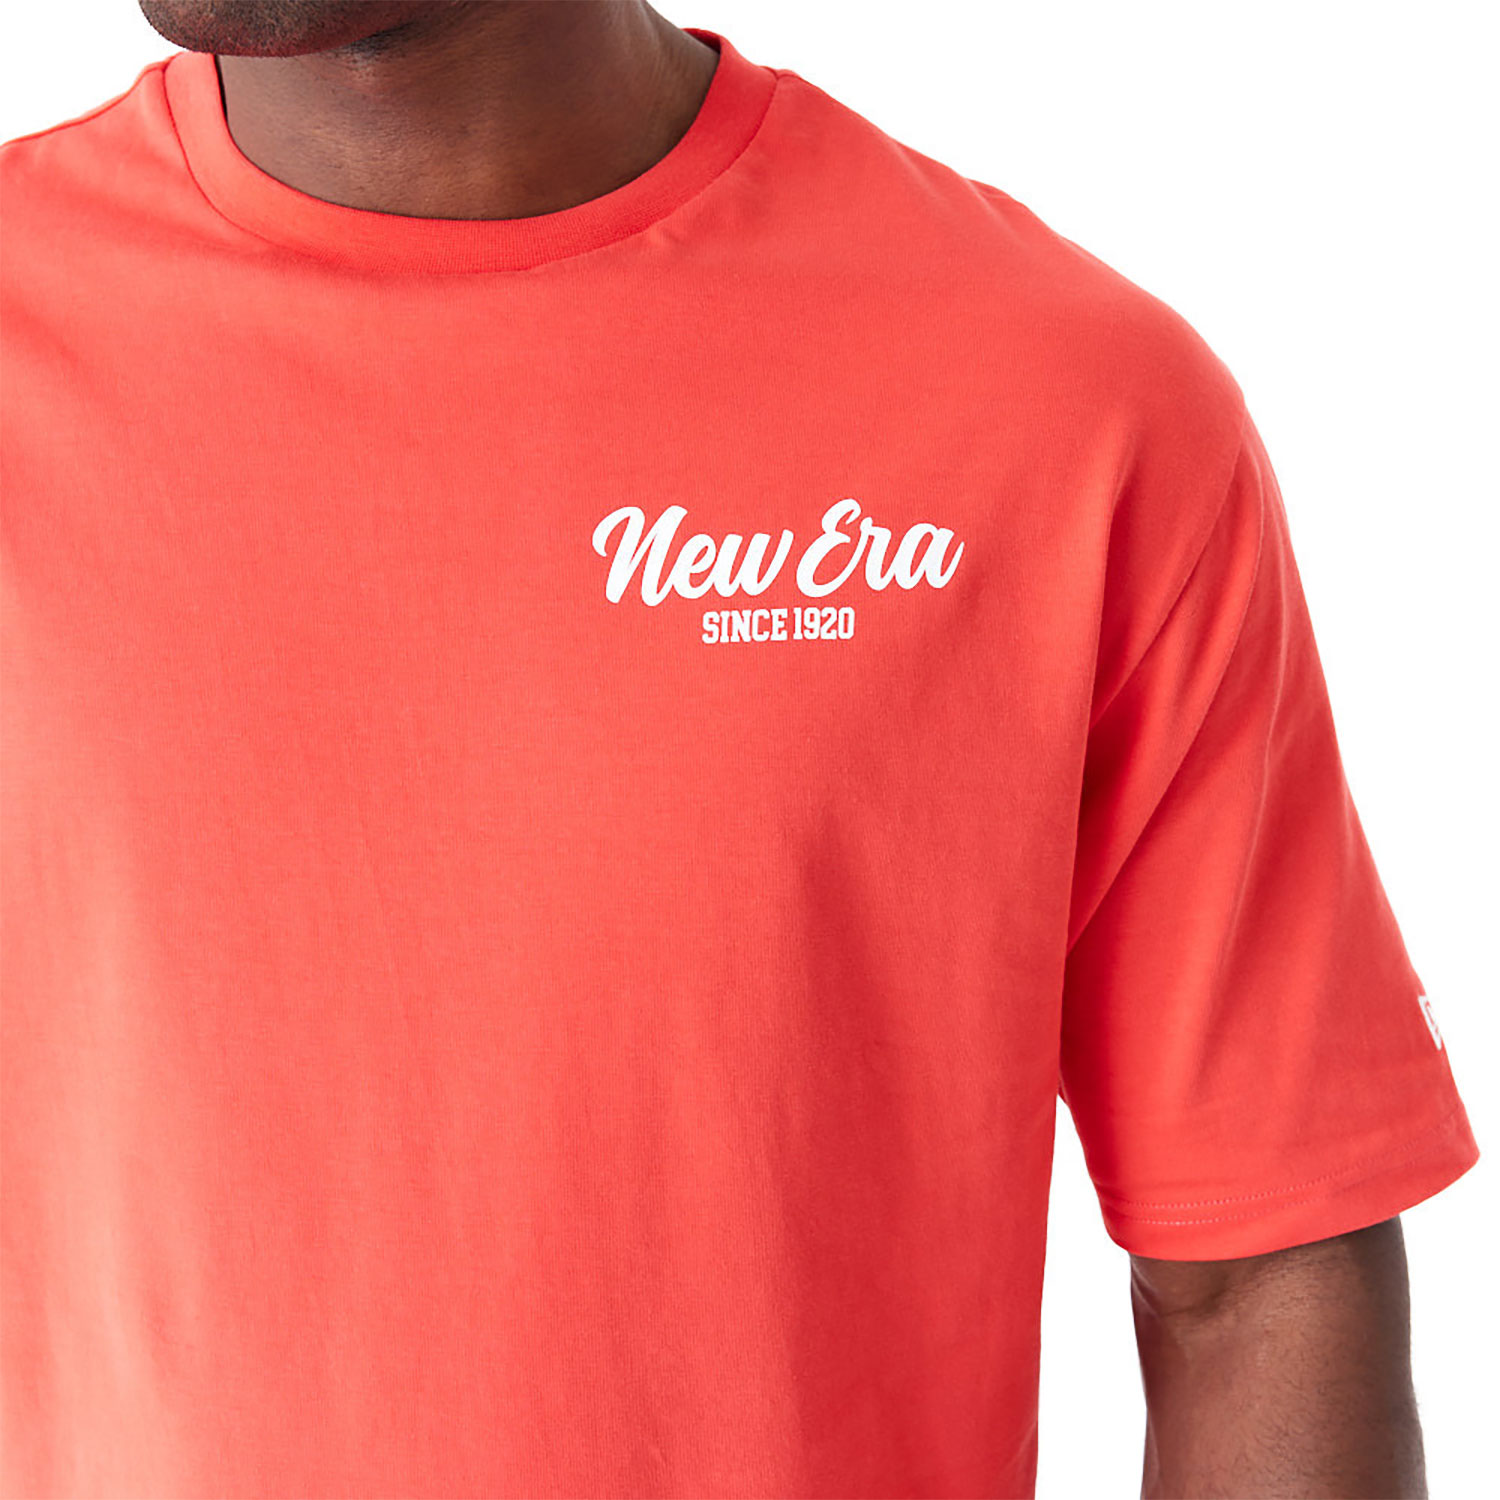 New Era Cactus Graphic Red Oversized T-Shirt